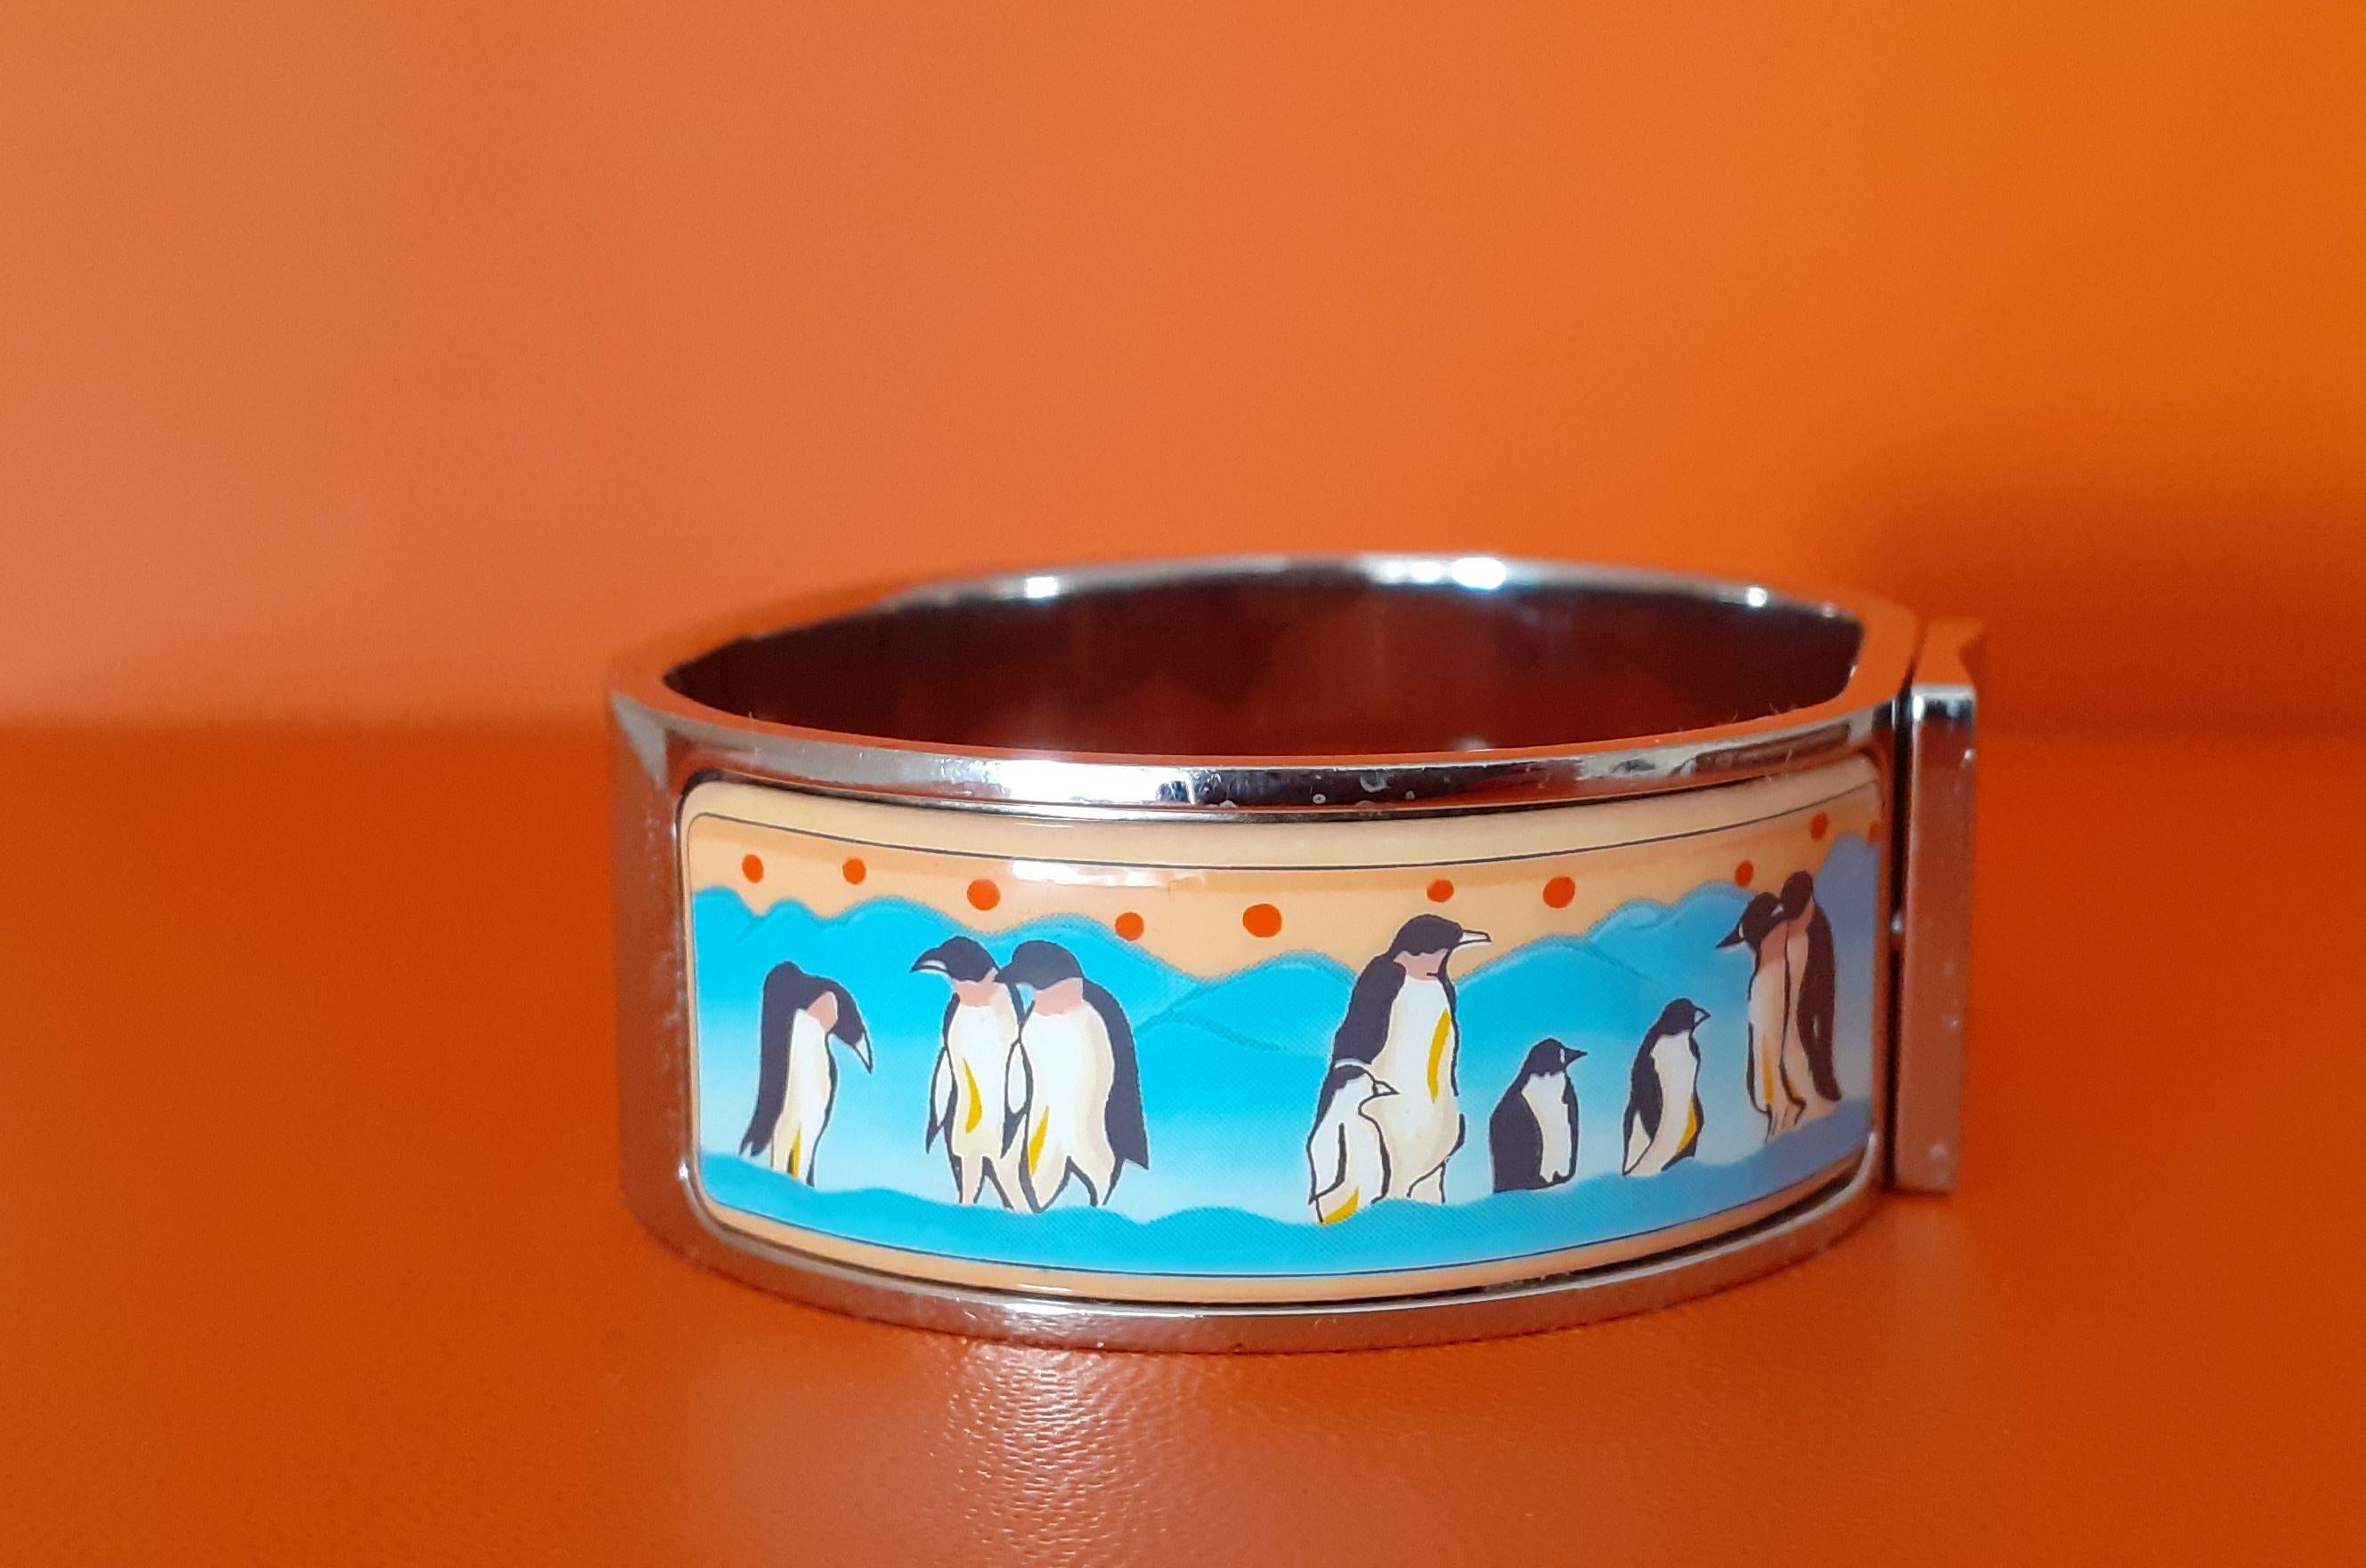 Super Cute Authentic Hermès Bracelet

Print: penguins on pack ice

